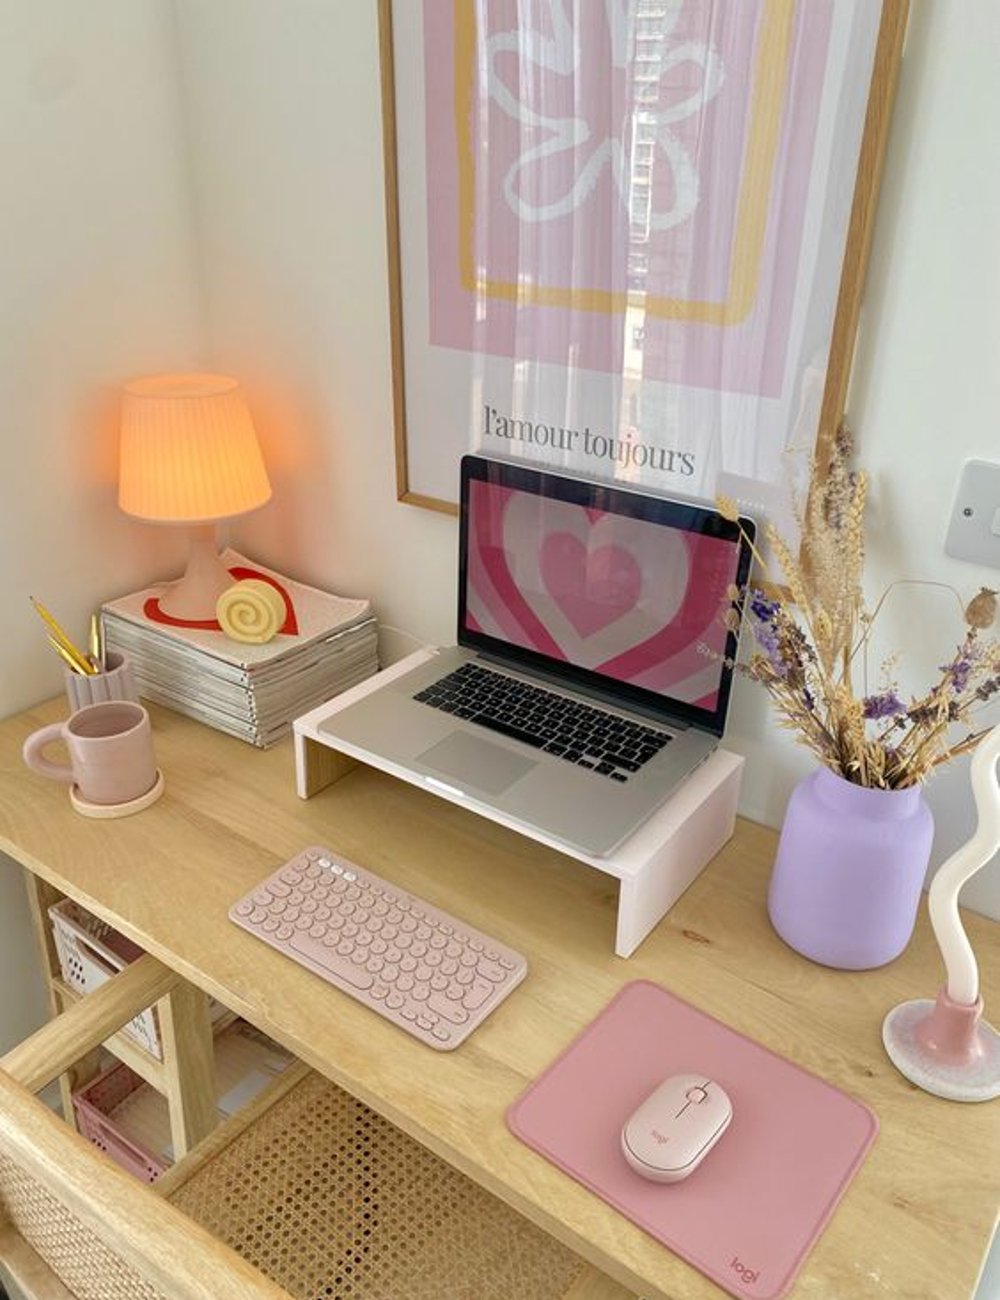 Decoração com objetos funcionais - decor - mesa de escritório - casa - dicas - https://stealthelook.com.br